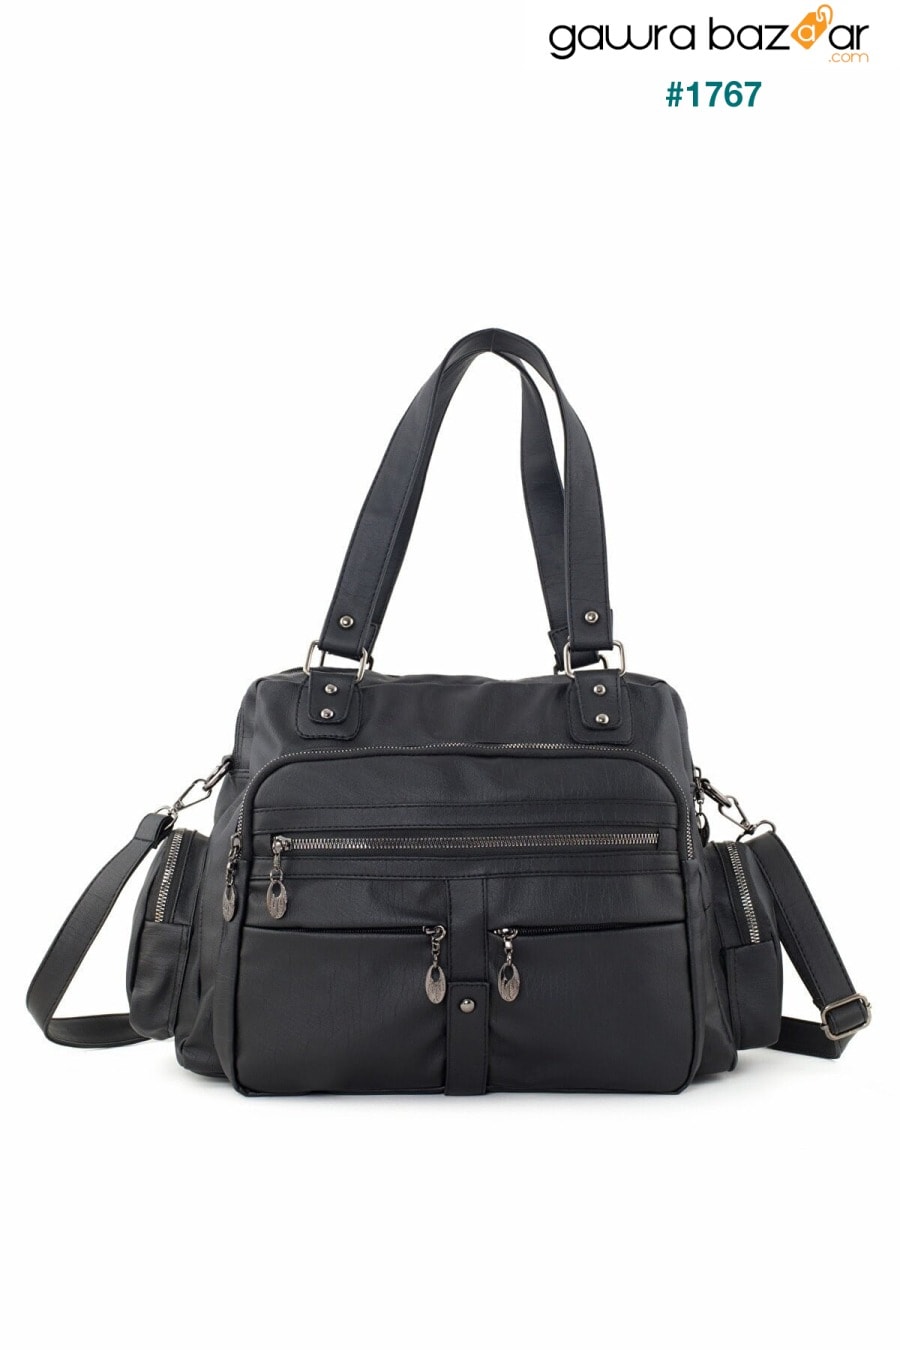 Frappe Bag للسيدات حقيبة كتف متعددة الأقسام من الجلد باللون الأسود - مع جيب مخفي في المقصورة الرئيسية Smurne 1